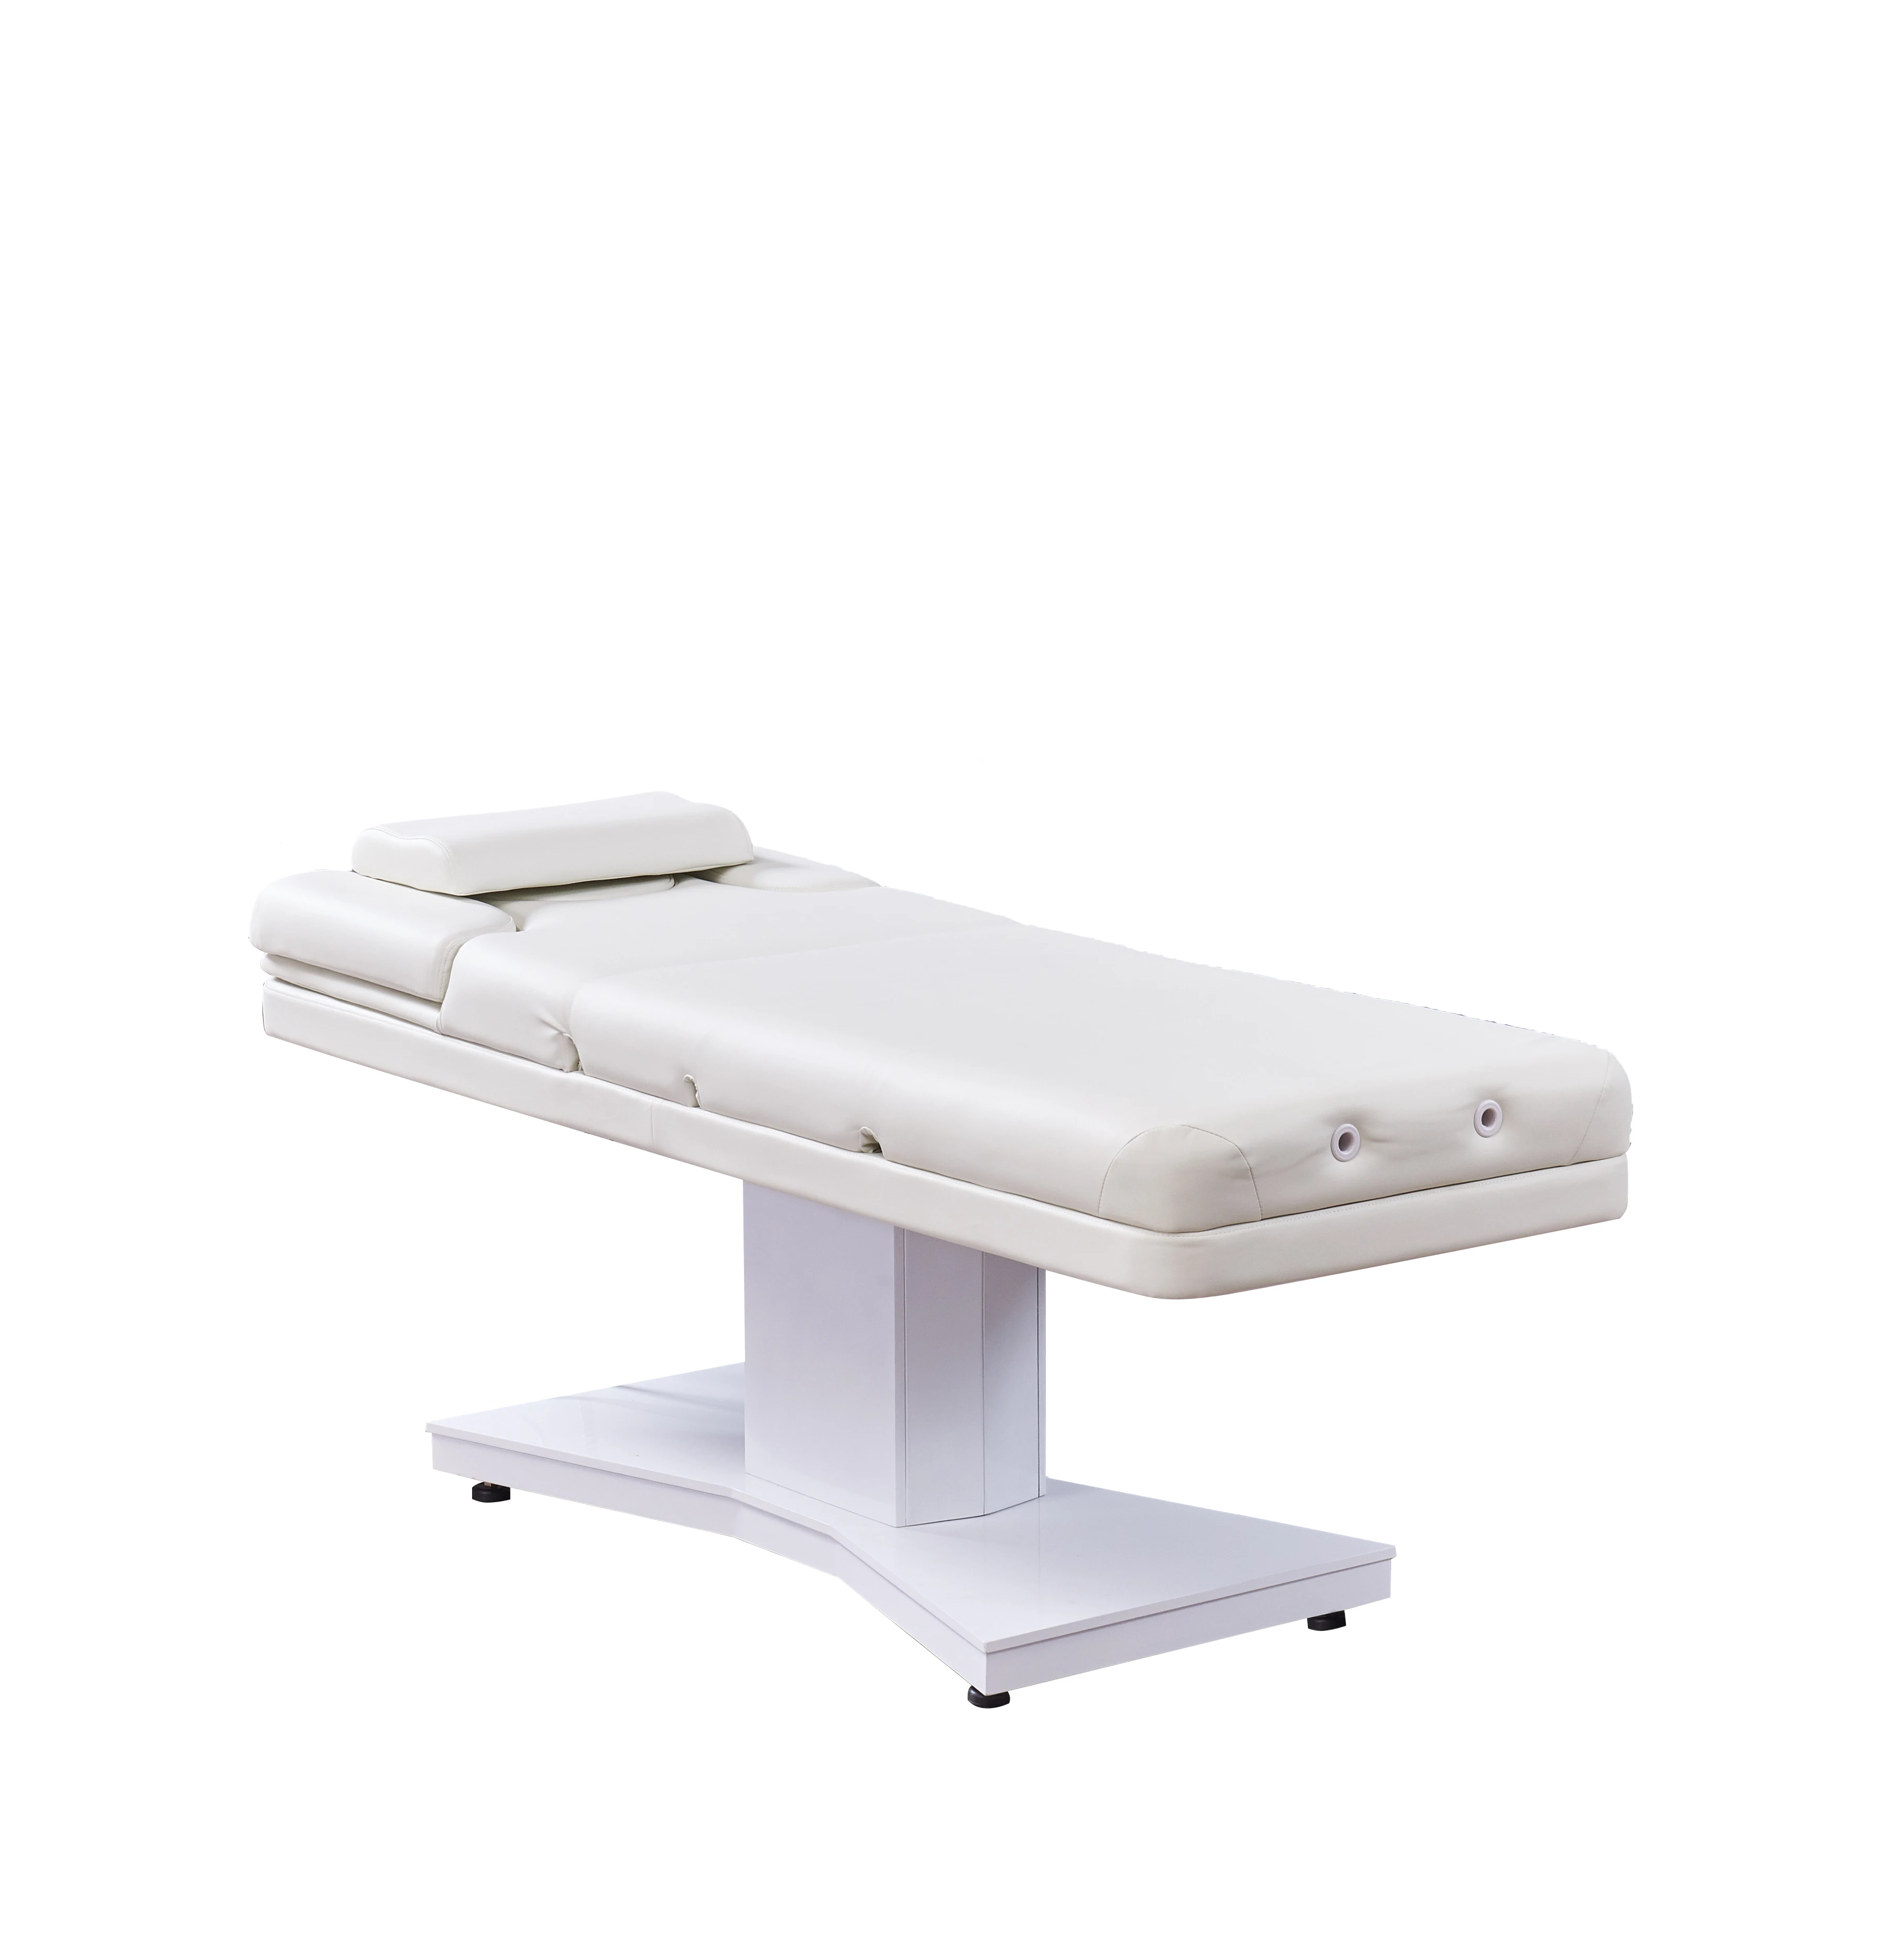 Doshower DS M9004 B салон мебель массажная кровать с косметическим салонным